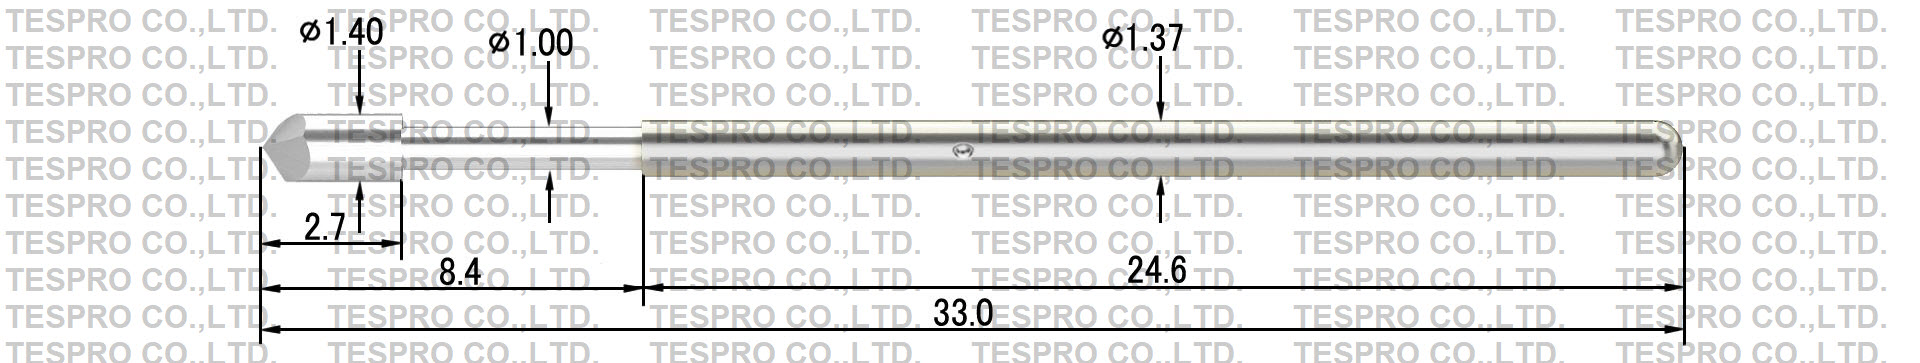 http://tespro-jp.com/product/tp137_NiS_tespro.jpg